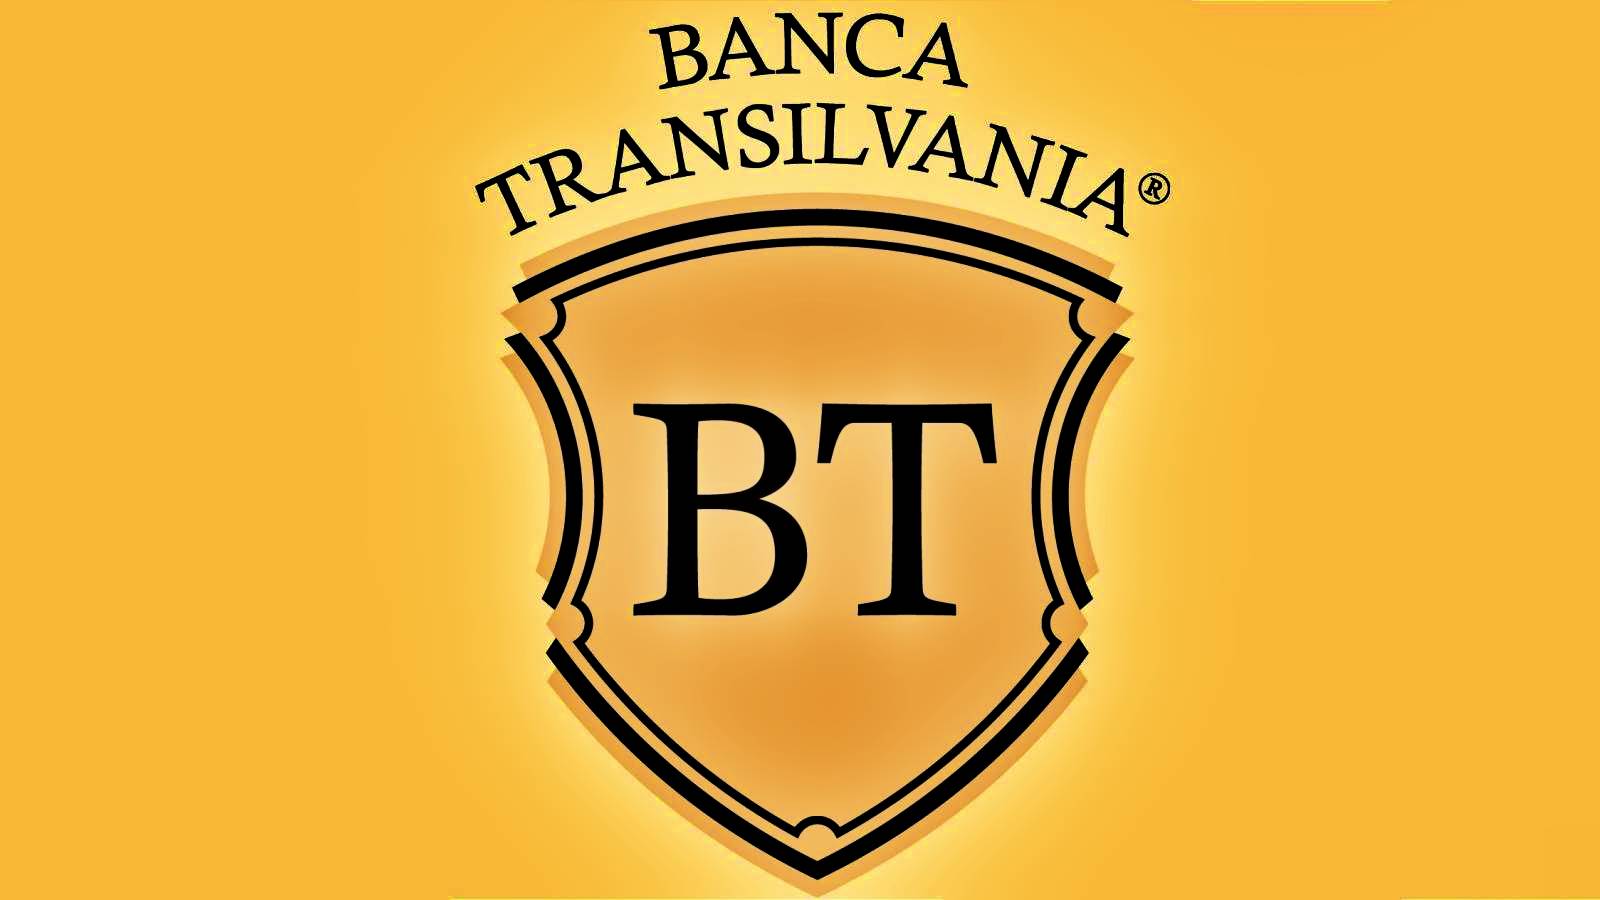 BANCA Transilvania Den OFFICIELLE meddelelse er rettet mod kunder, de ikke kendte